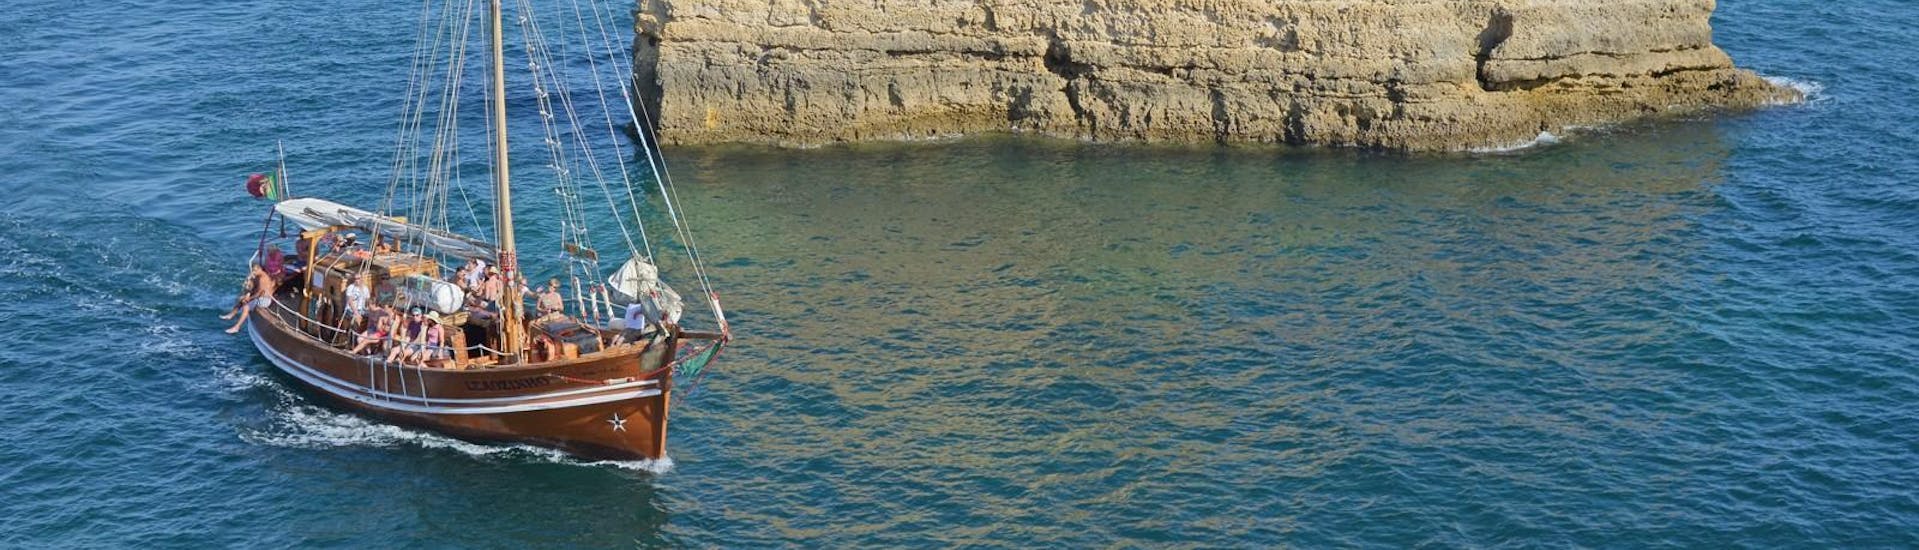 Les vacanciers apprécient la vue imprenable lors de leur balade en bateau pirate avec Dream Wave le long de la côte de l'Algarve.